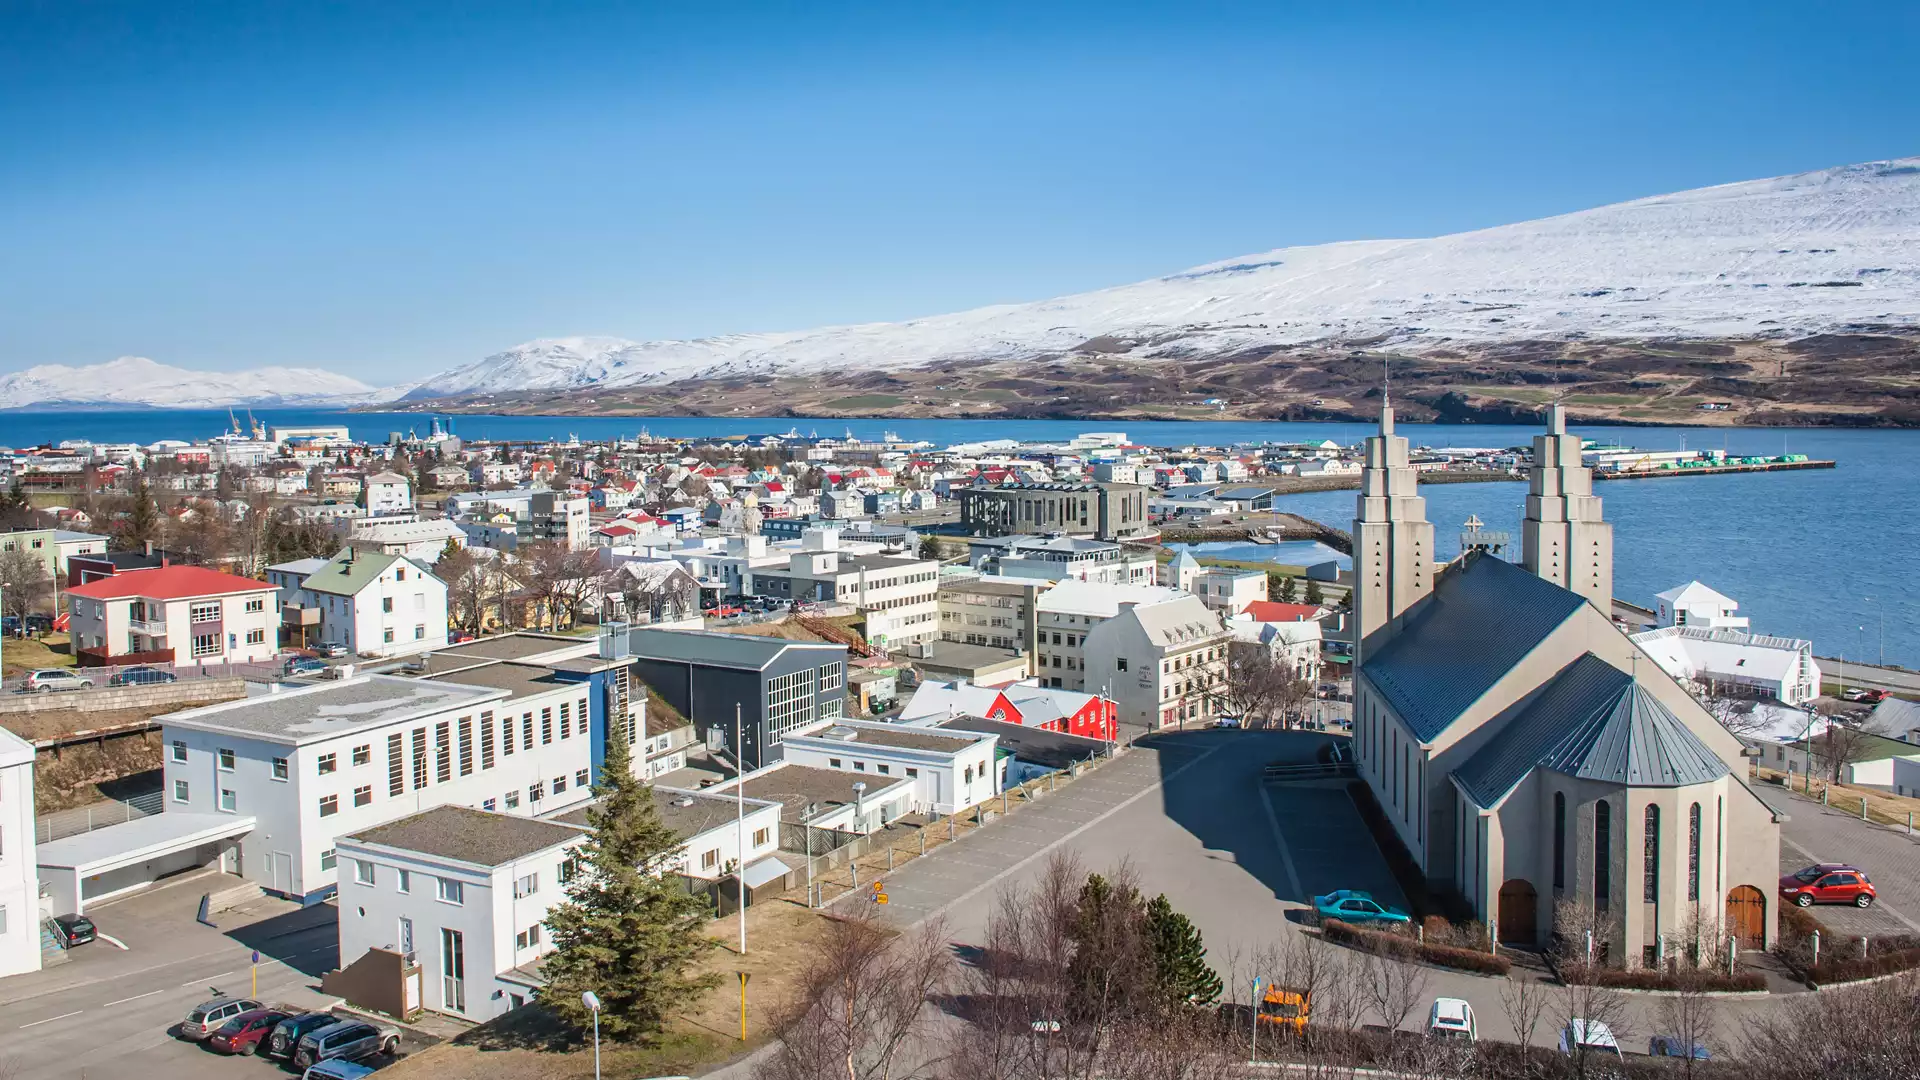 Terug naar de grootste stad van het noorden, Akureyri